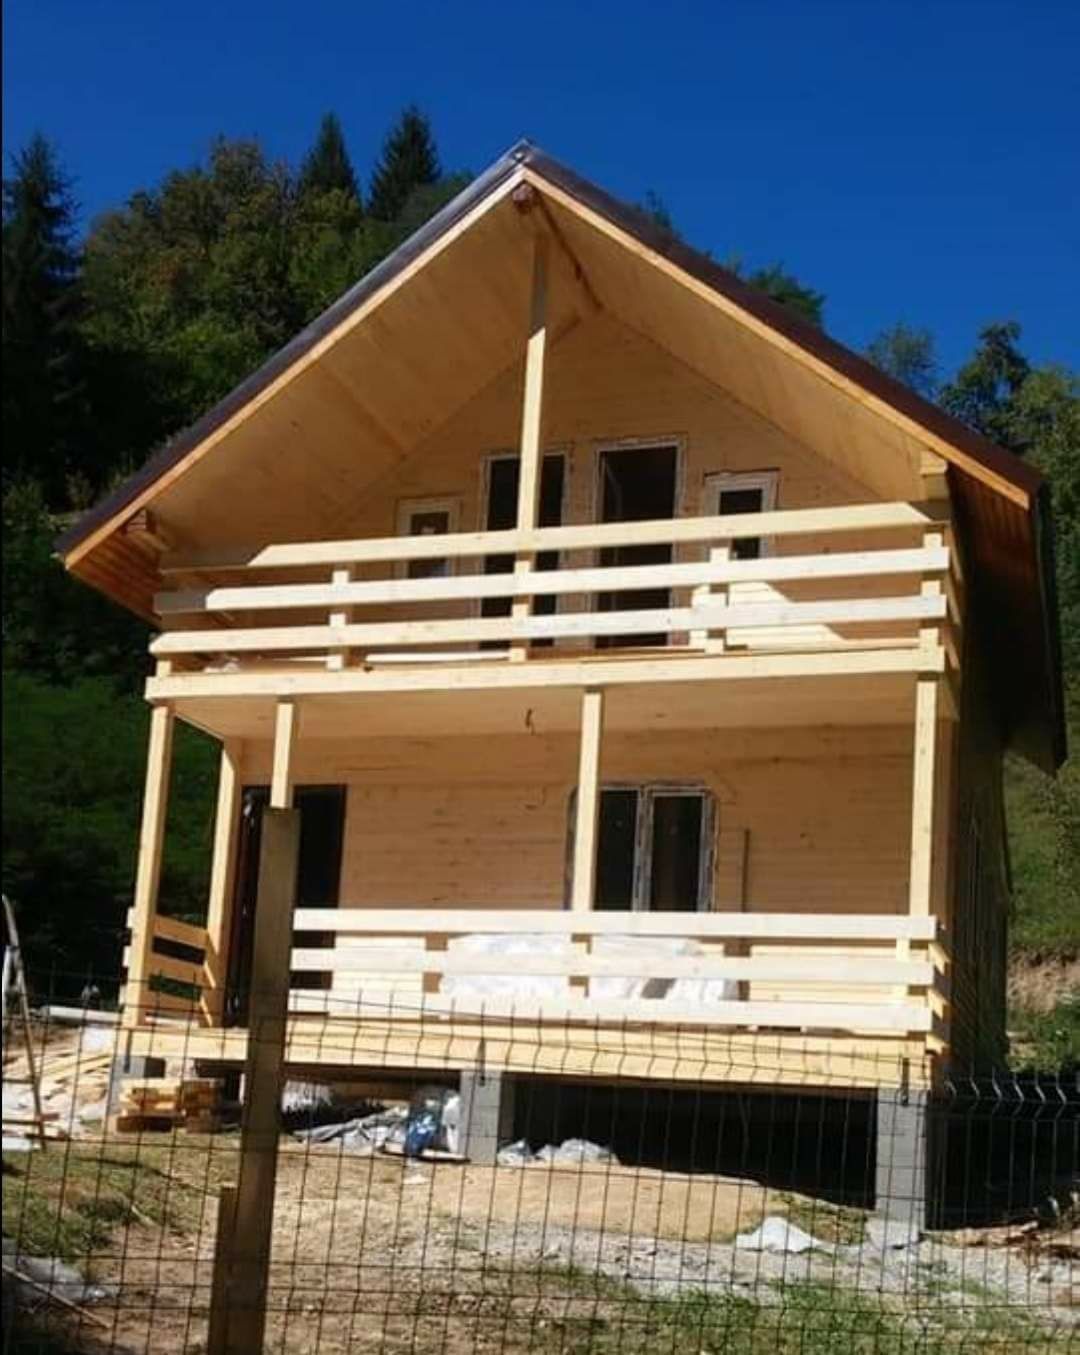 Constructii case si cabane din lemn, mansarde, casute de gradina